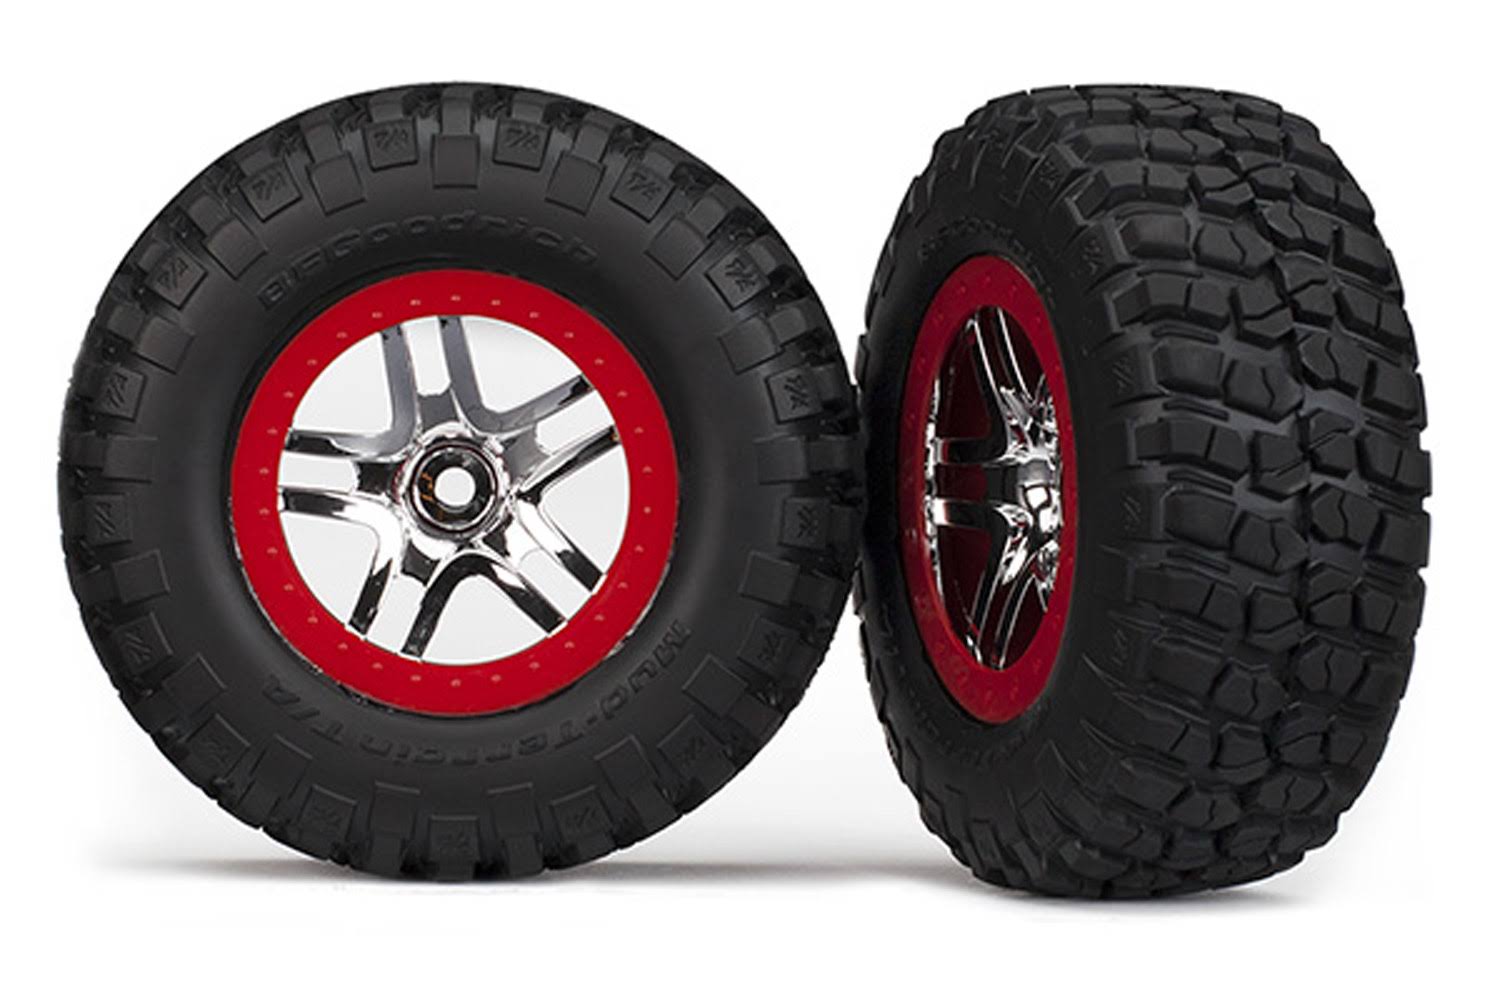 Traxxas TRA6873A Chrome Wheels RC Vehicle Mud Assembled Terrain Tires - Red, 2pcs